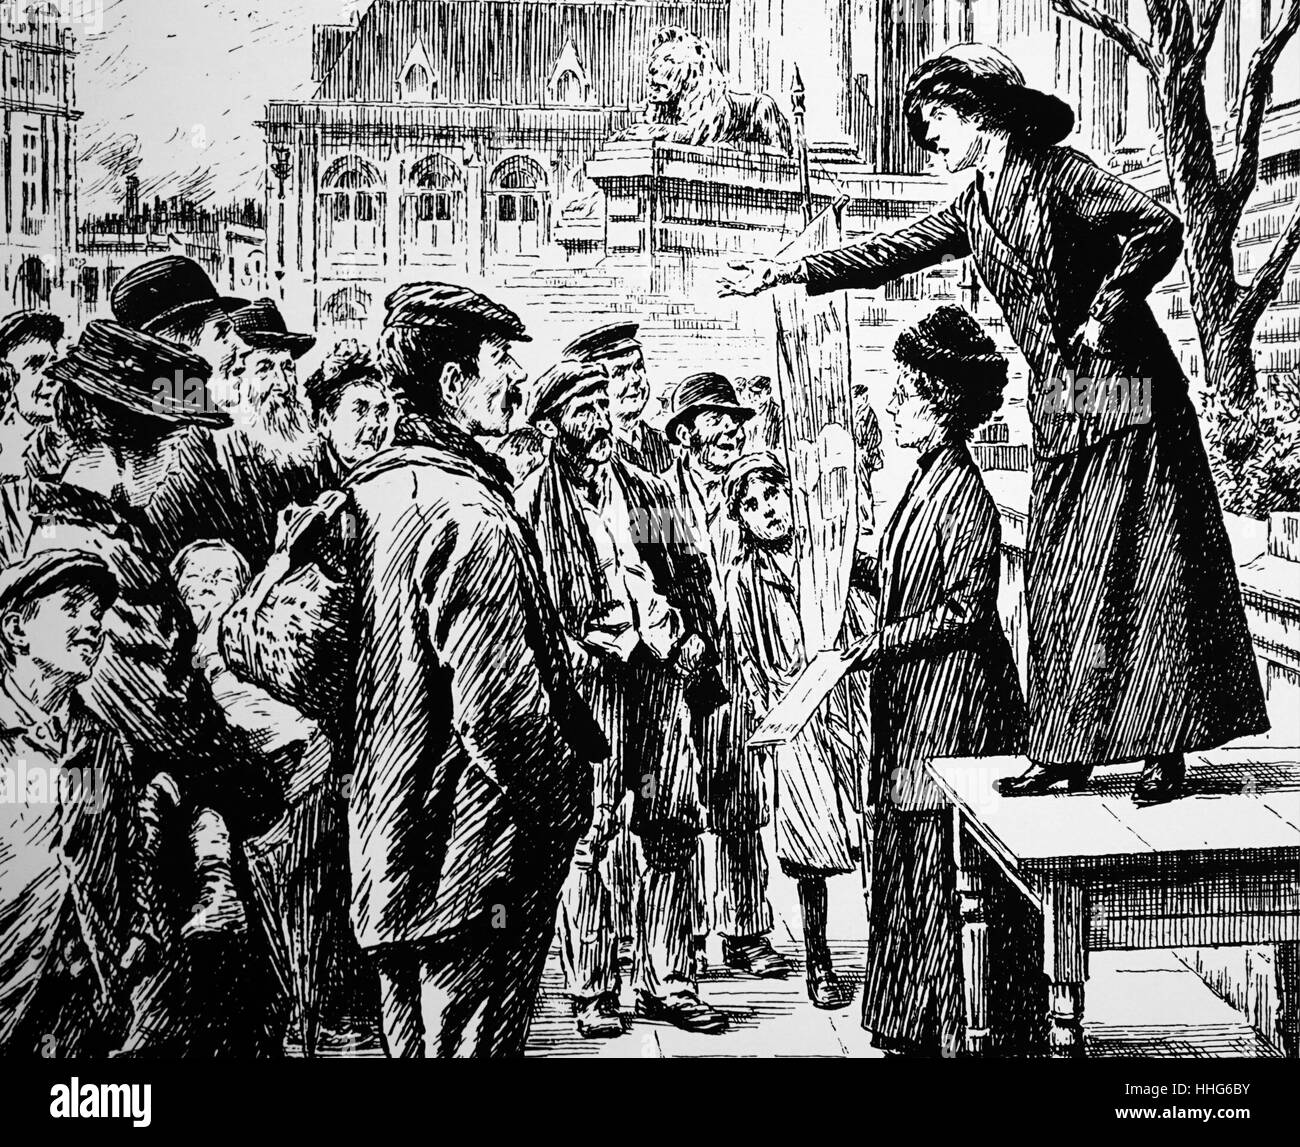 Indirizzamento delle Suffragette una folla di Londra. 1912. Suffragettes erano membri di organizzazioni di donne di fine ottocento e primi del XX secolo che ha invocato l'estensione del "franchising", o il diritto di voto nelle elezioni pubbliche, alle donne. Essa in particolare si riferisce a militanti nel Regno Unito come membri della donna sociale e politica europea (WSPU). Suffragist è un termine più generale per i membri del movimento di suffragio. Foto Stock